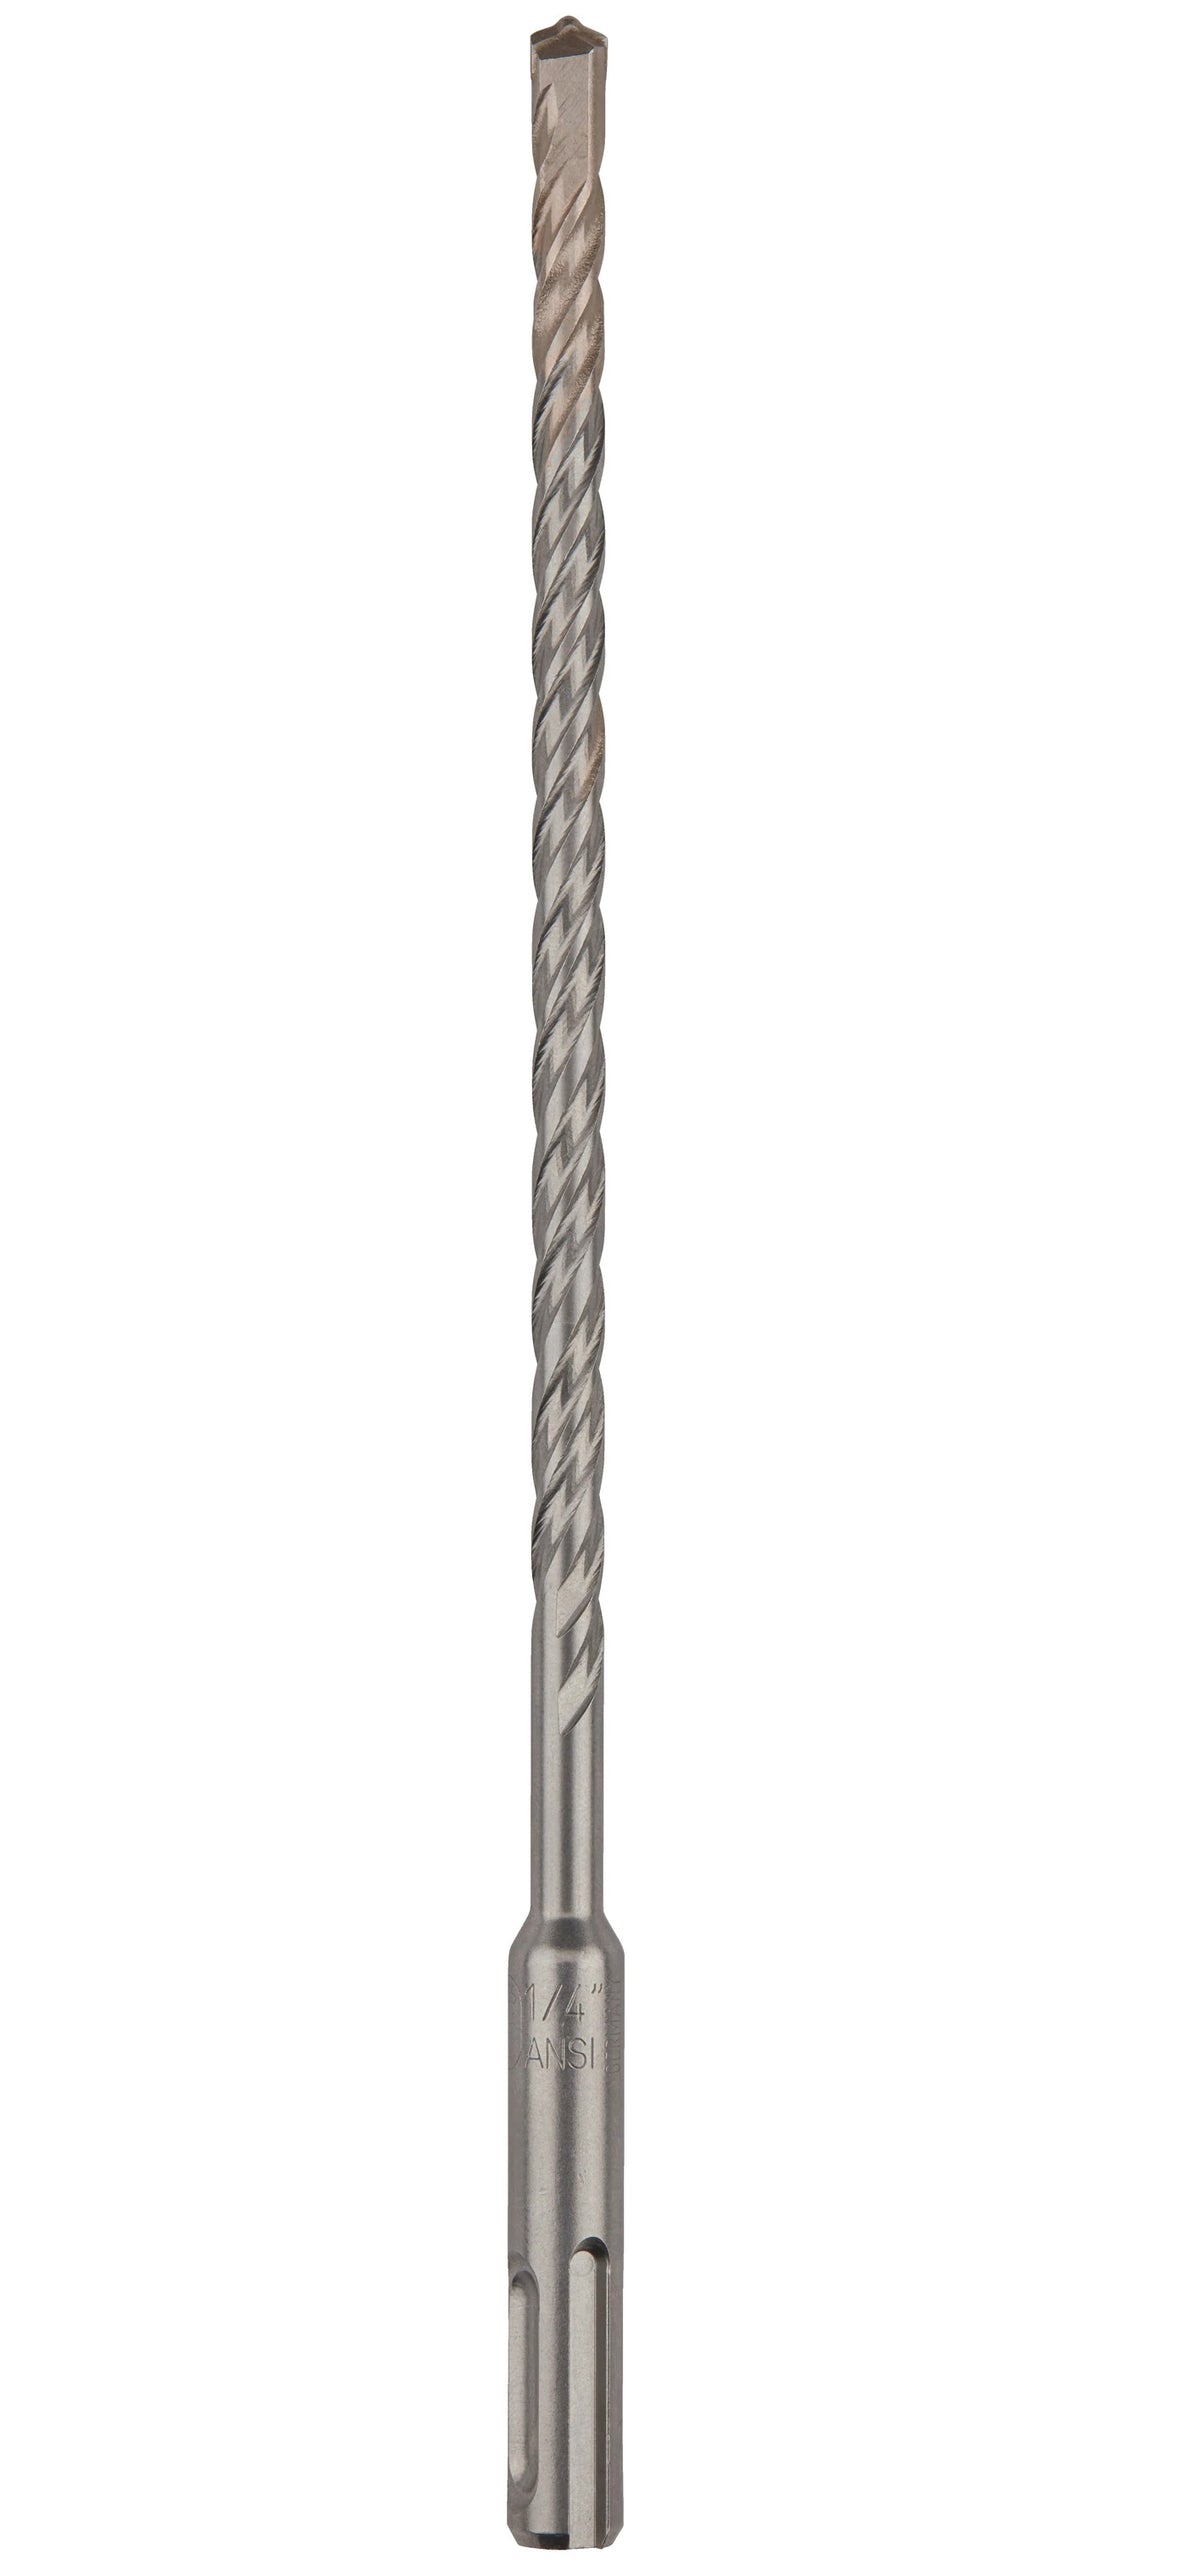 DeWalt DW5429 Rock Carbide SDS Plus Hammer Drill Bit, 3/8 Inch x 8 Inch x 10 Inch